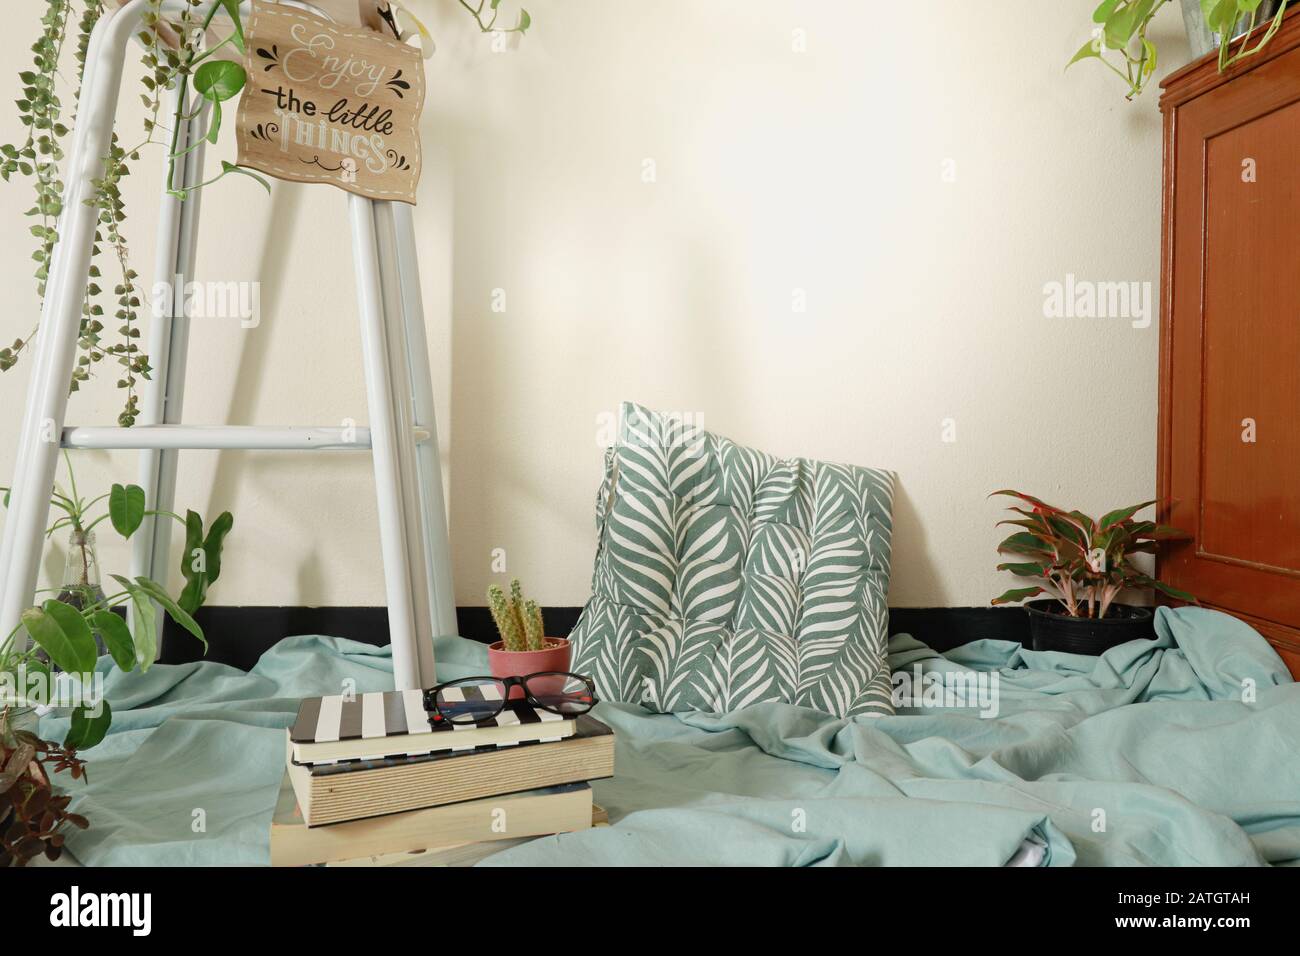 Primavera tempo ispirato decorazione casa utilizzando le piante domestiche per creare un sesso neutrale e rilassante spazio domestico Foto Stock